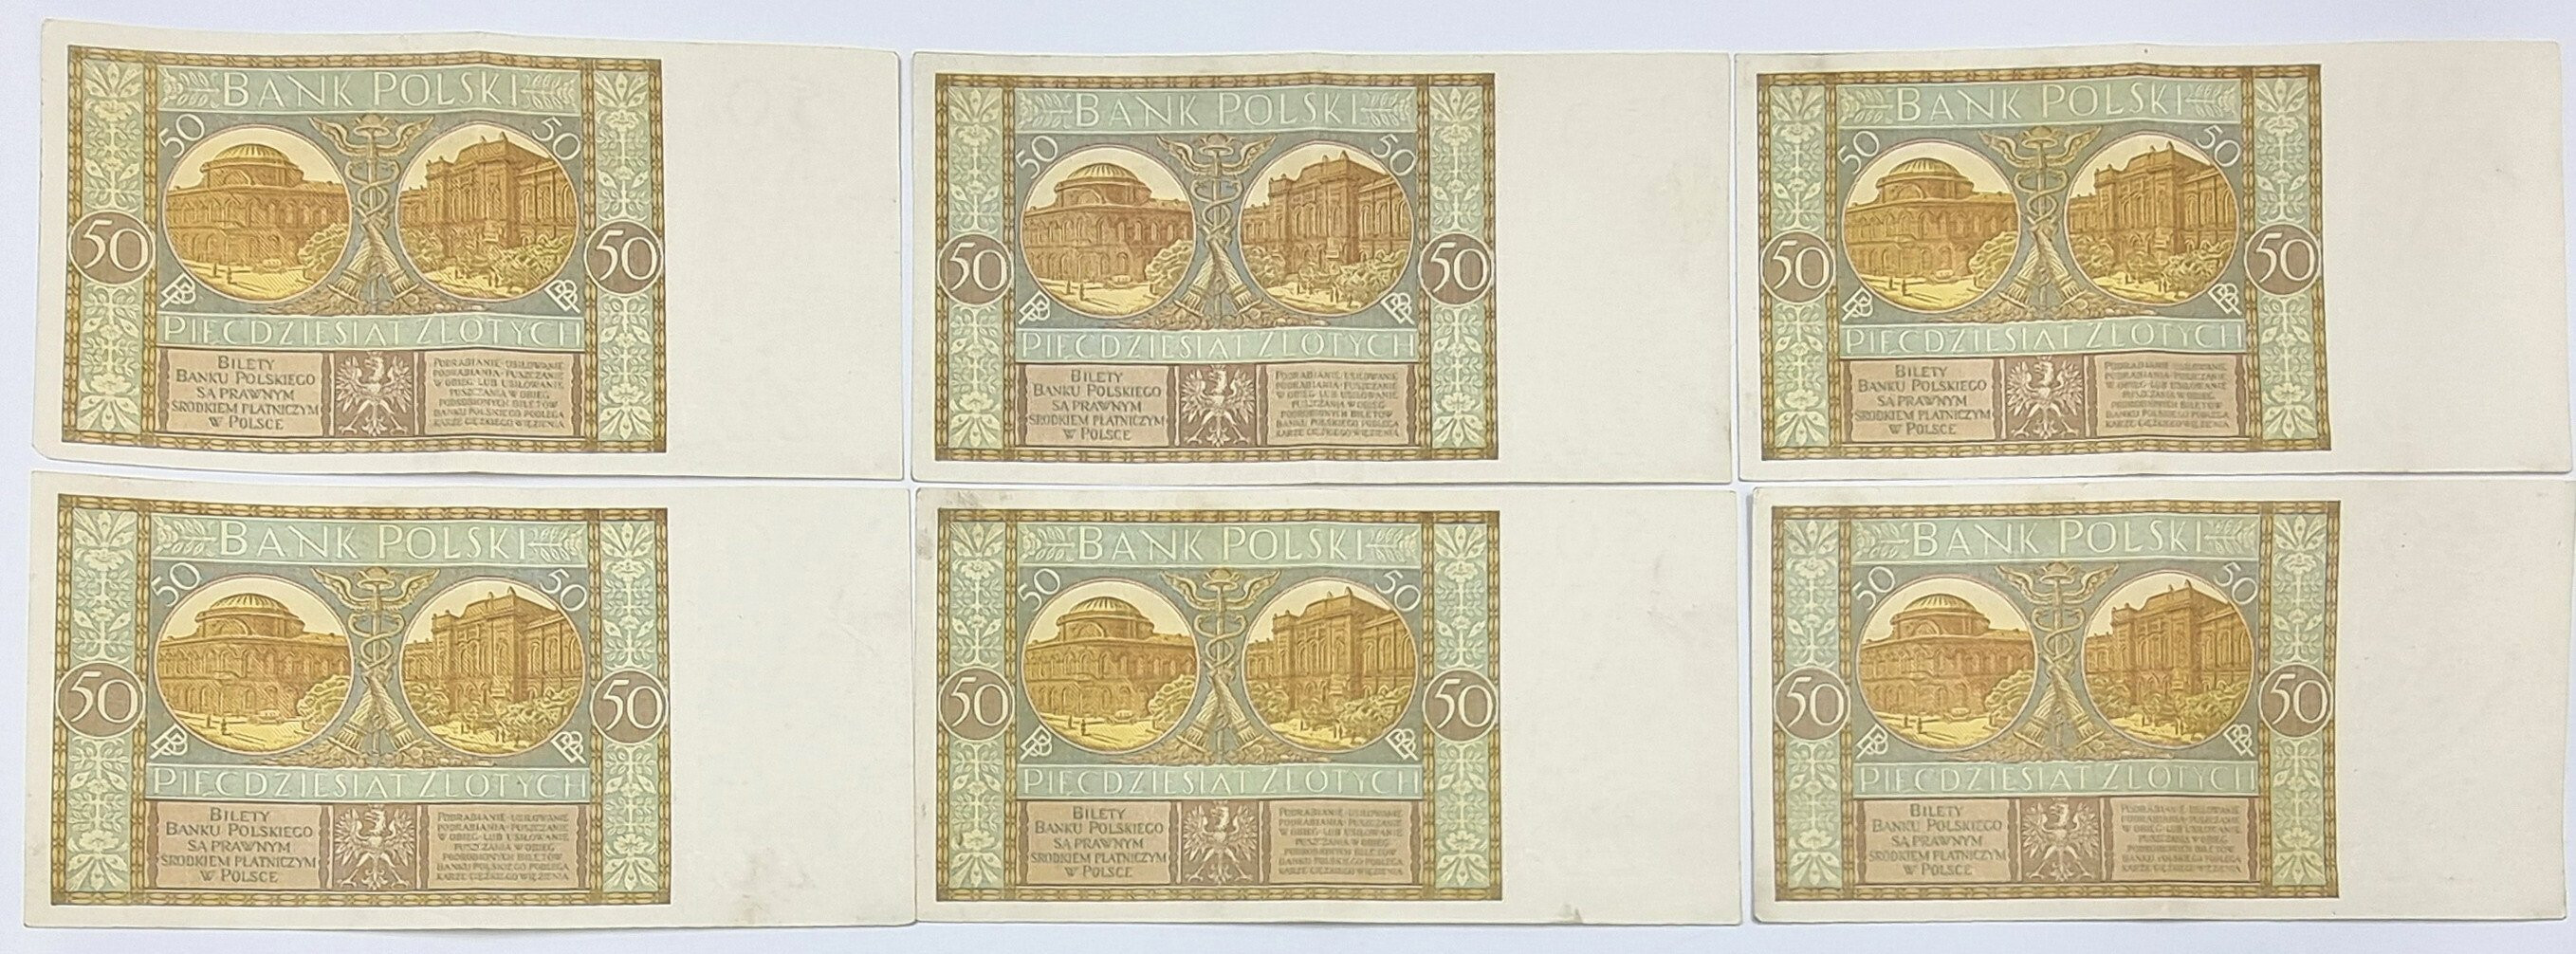 50 złotych 1929, zestaw 6 sztuk